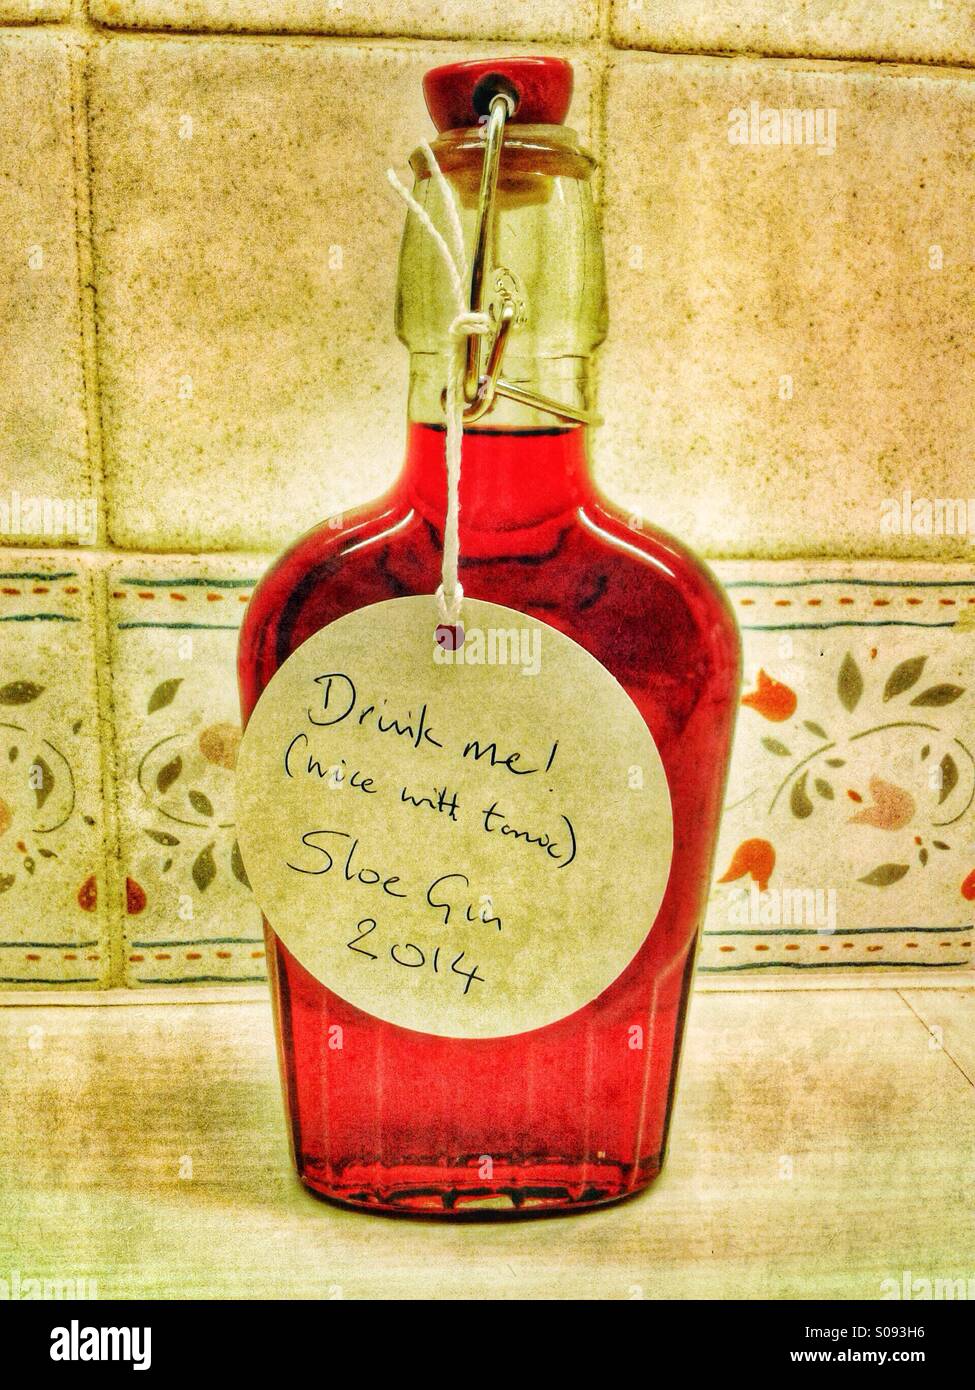 Sloe Gin in a bottle Stock Photo